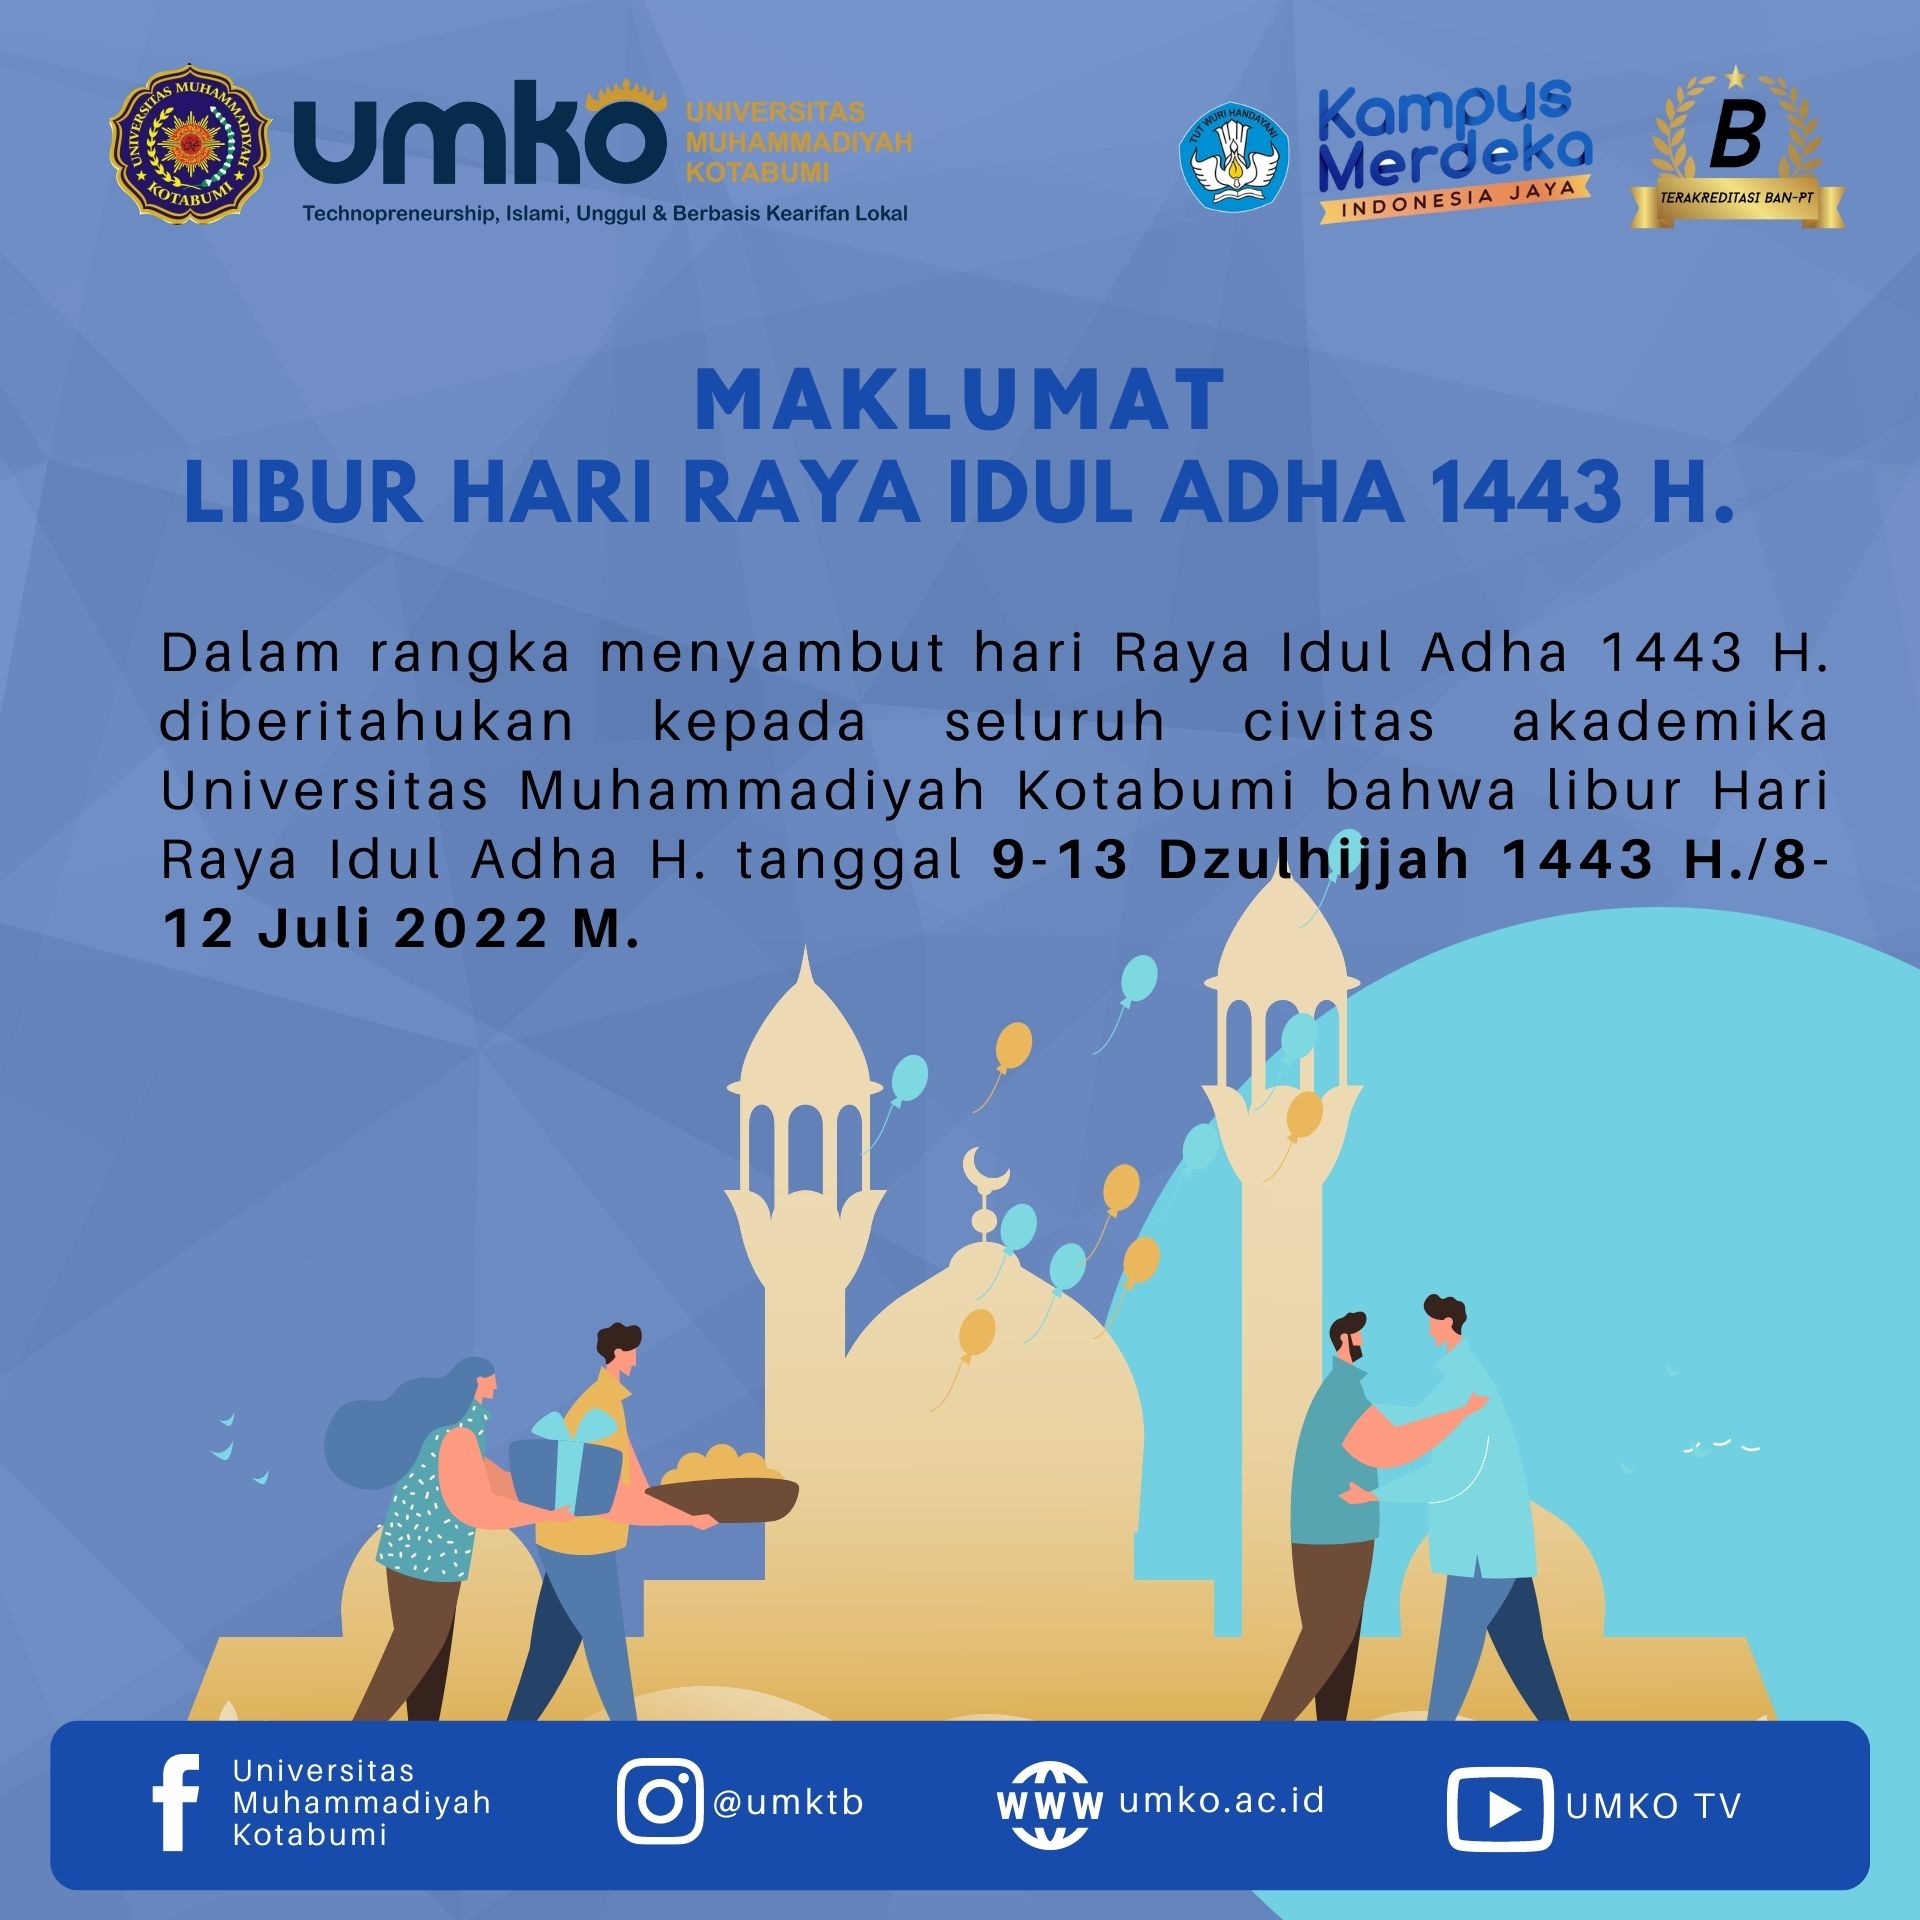 Maklumat Libur Hari Raya Idul Adha 1443 H. Universitas Muhammadiyah